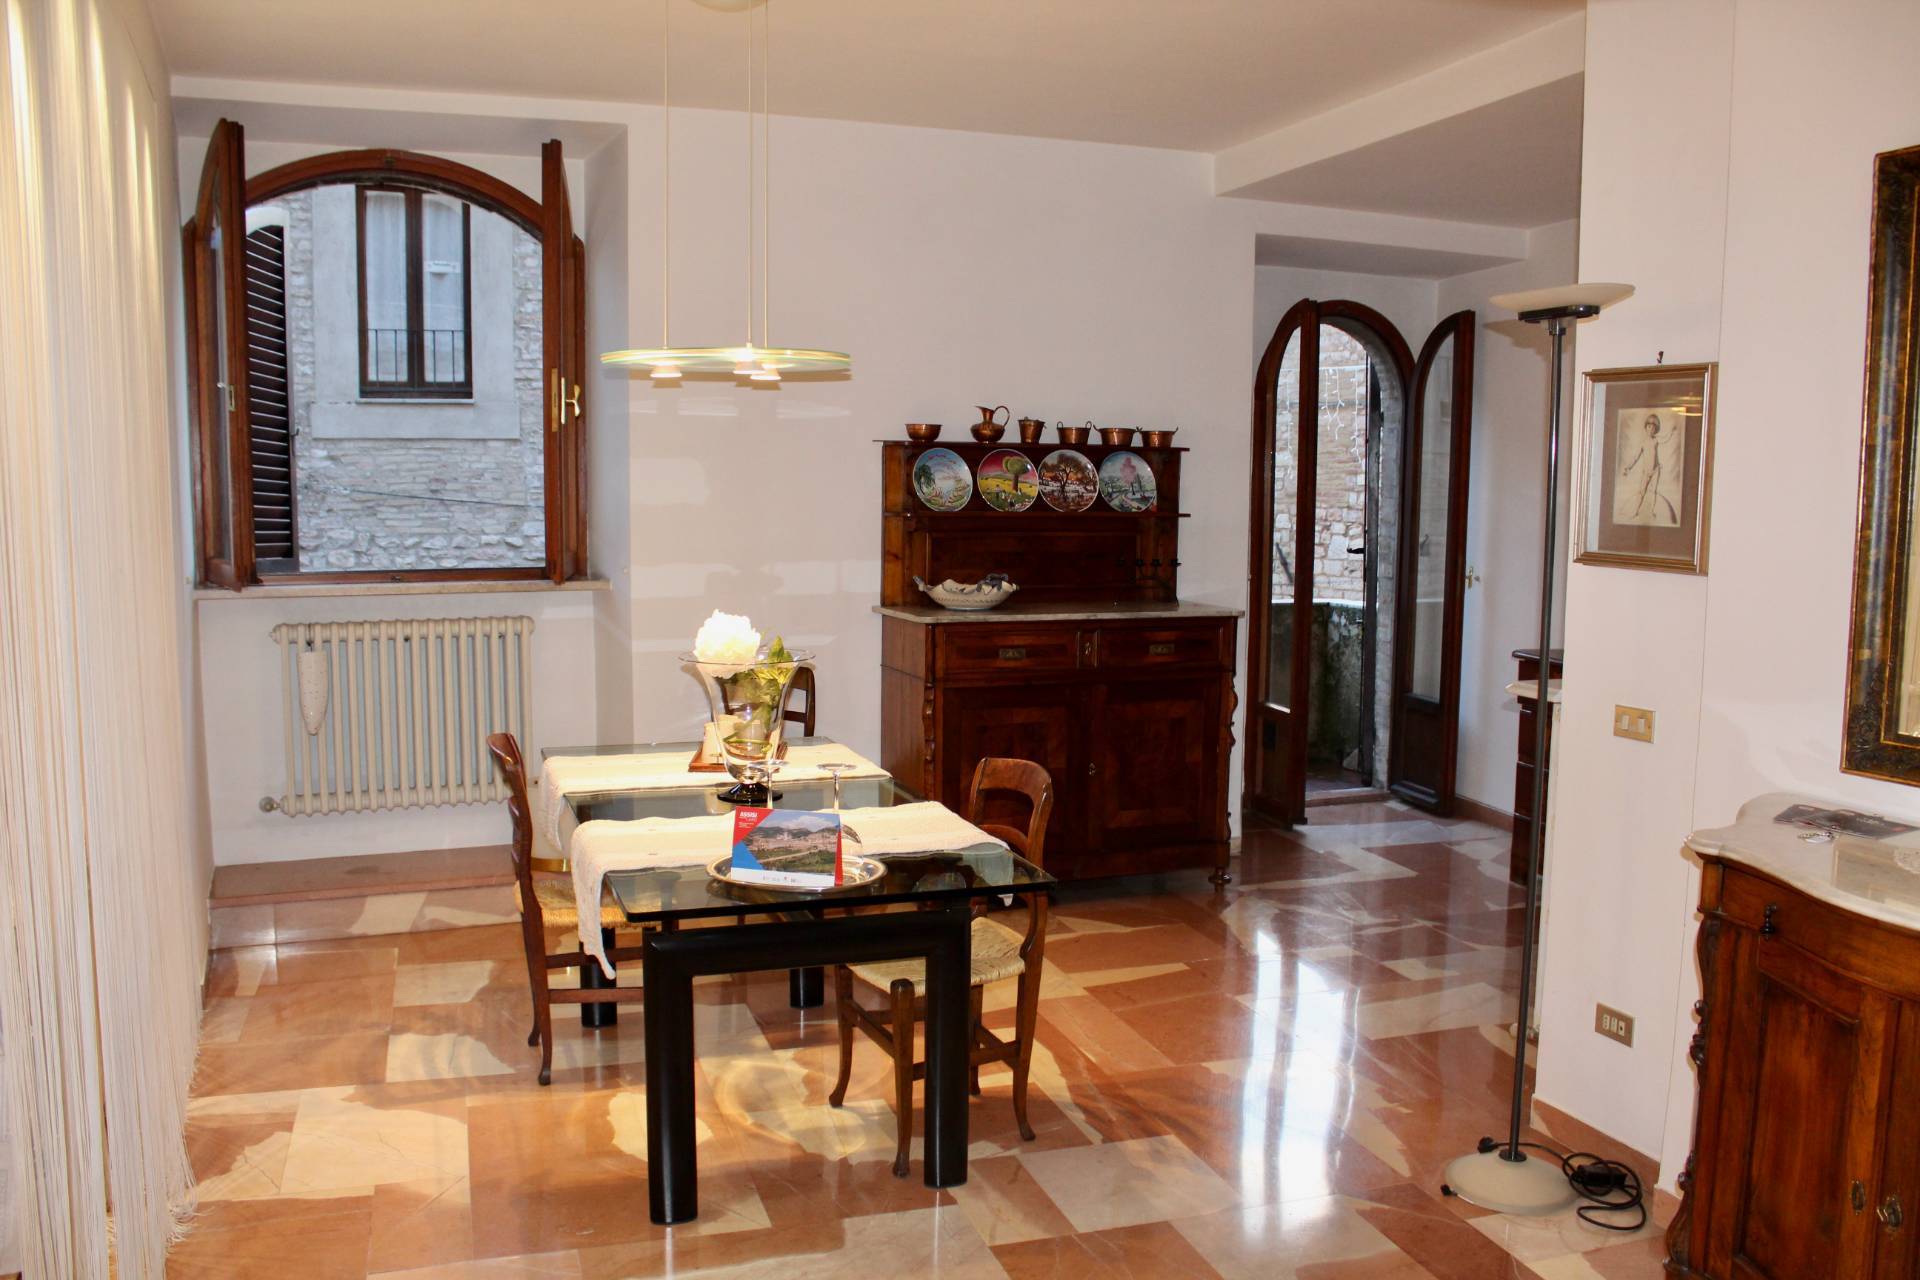 Appartamento in vendita a Assisi, 3 locali, zona Località: Assisicentro, prezzo € 250.000 | CambioCasa.it